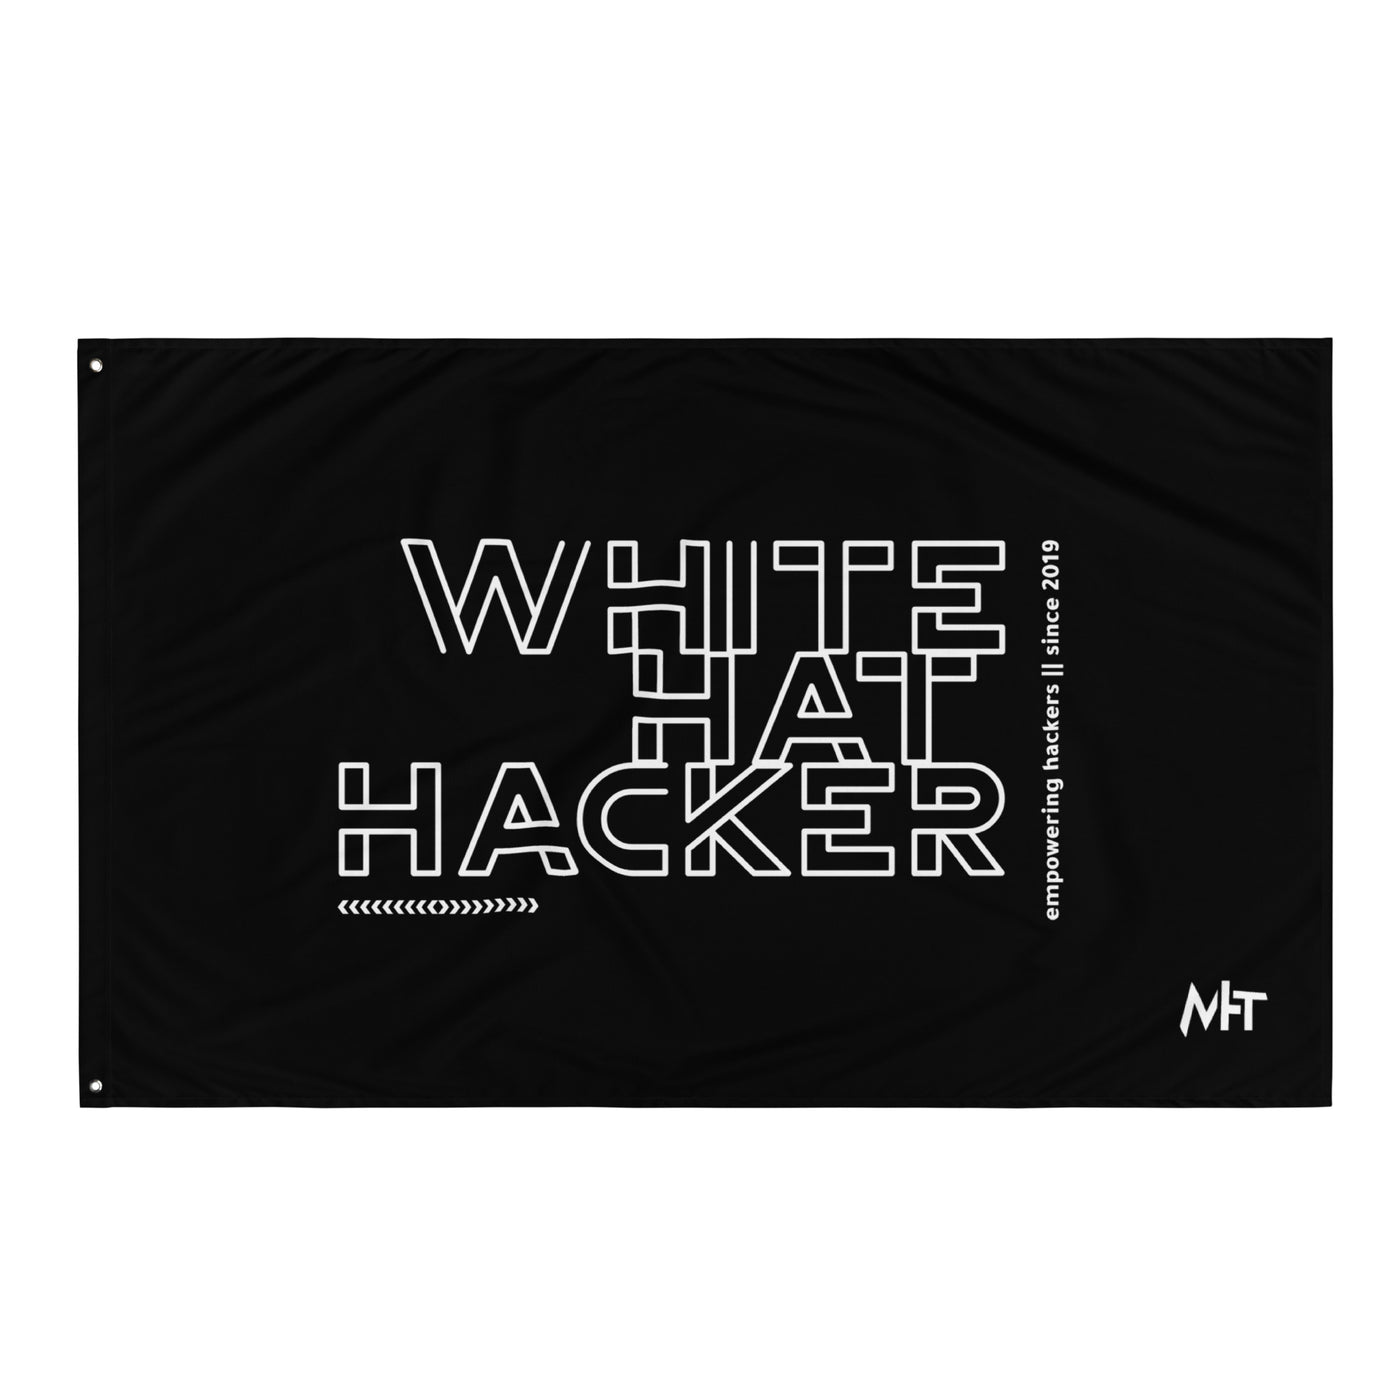 White Hat Hacker - Flag